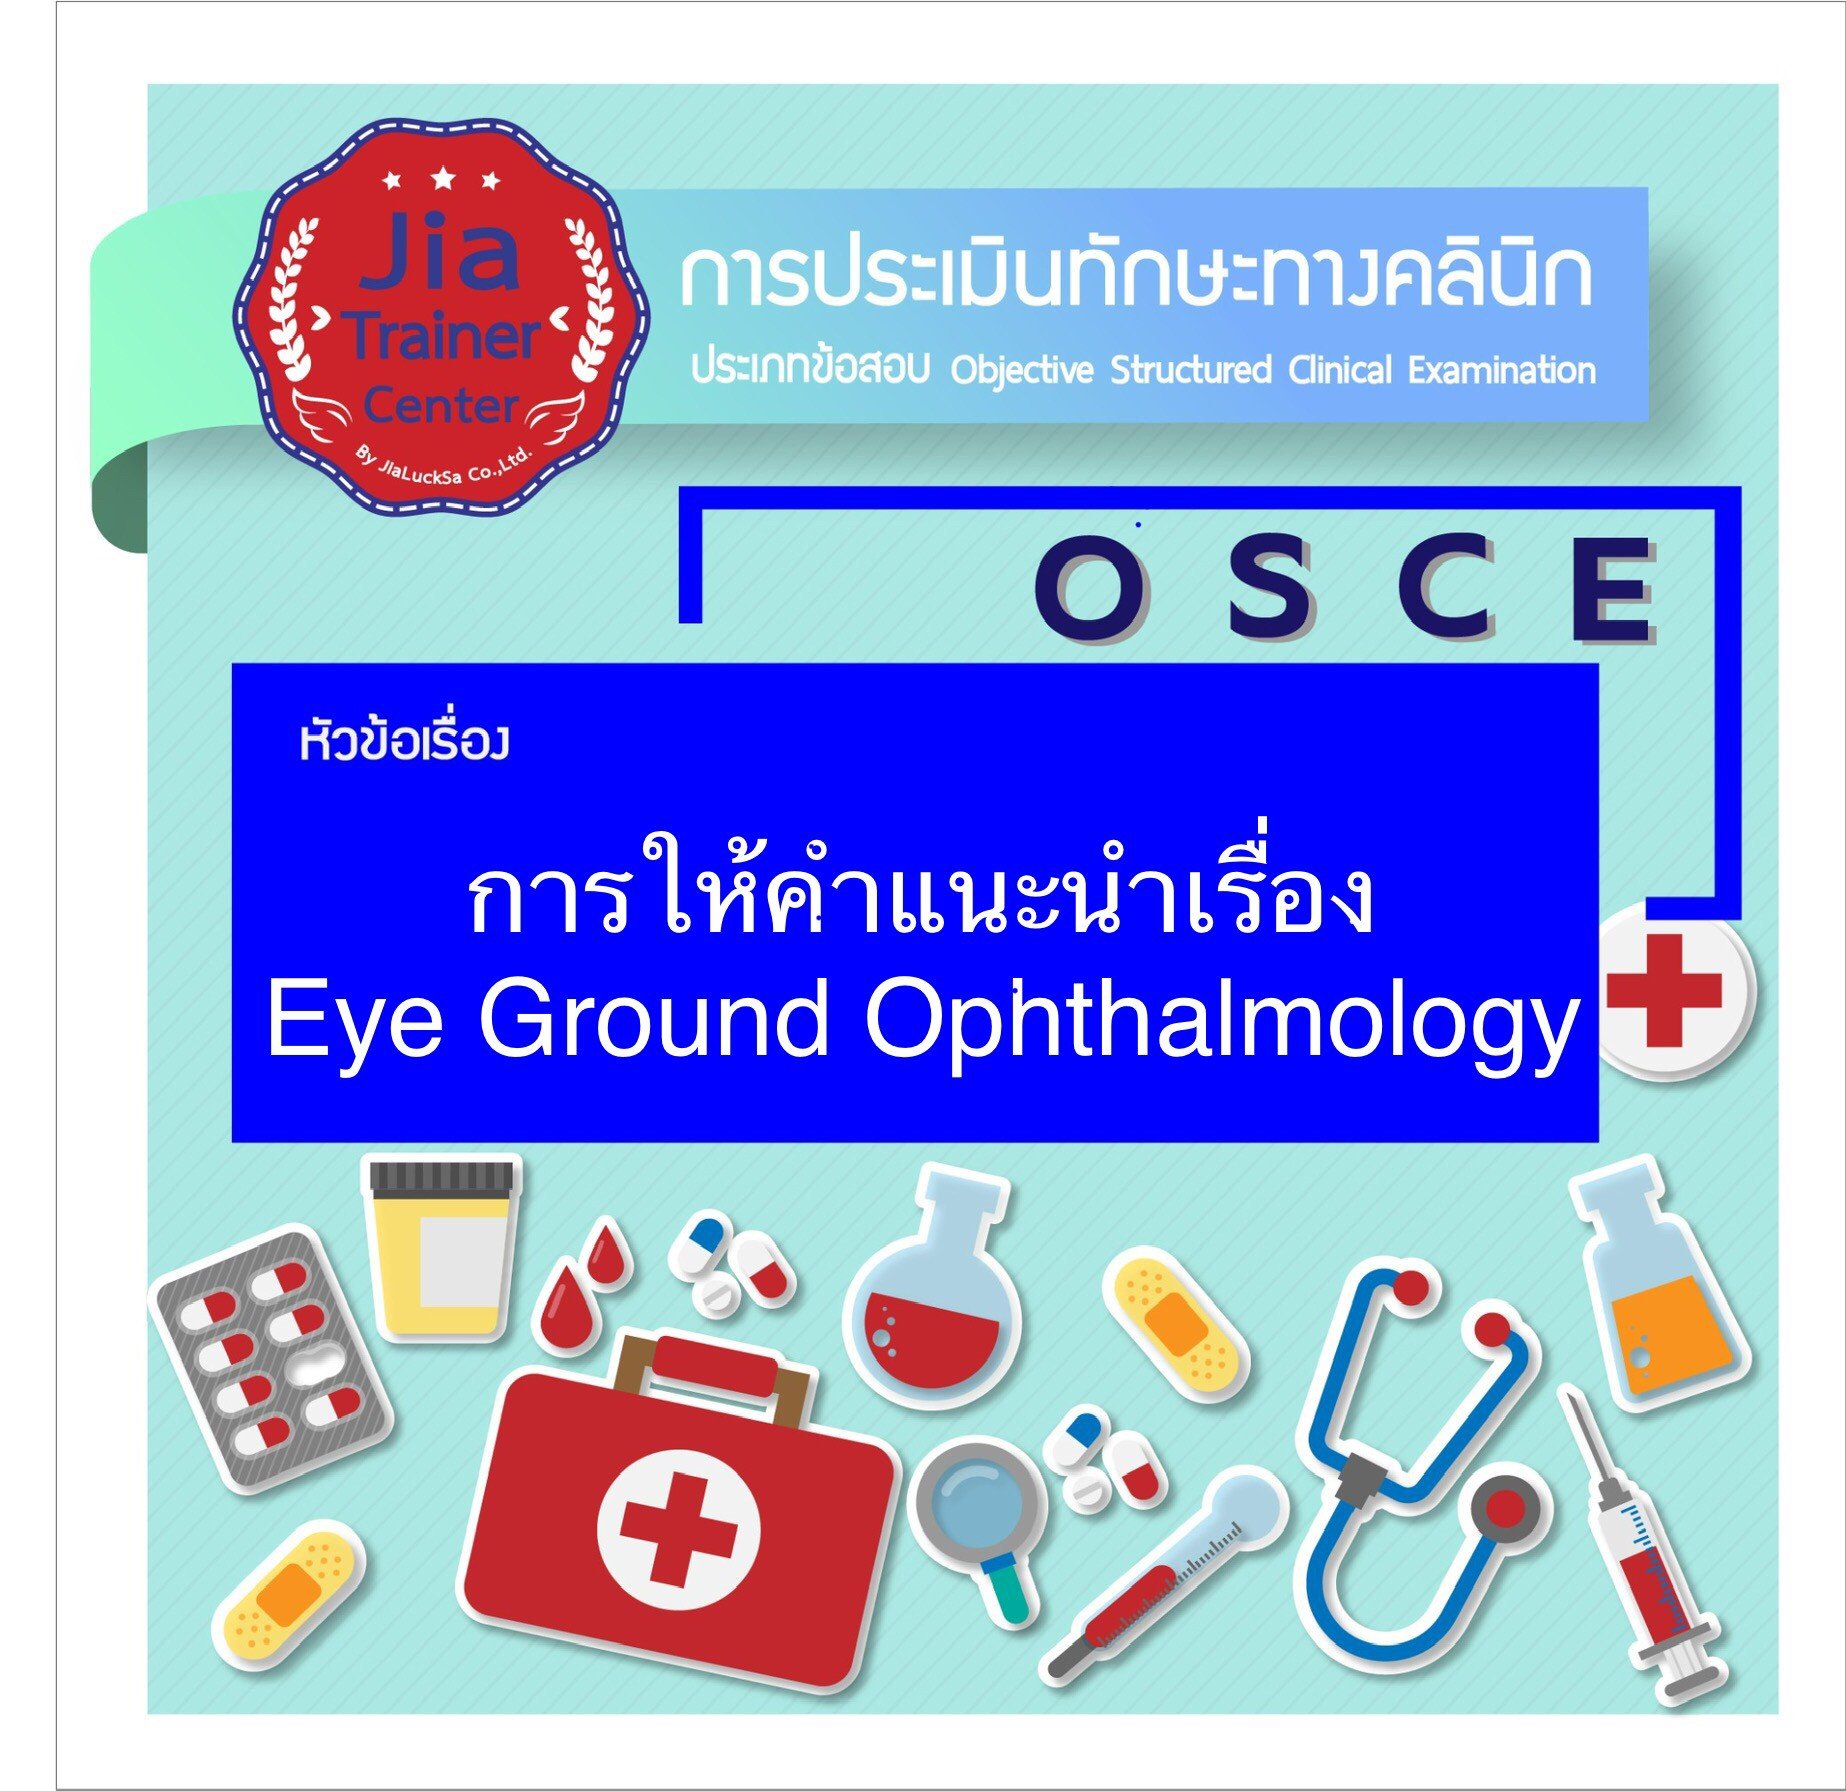 Osce-Advice on Eye Ground Ophthalmology